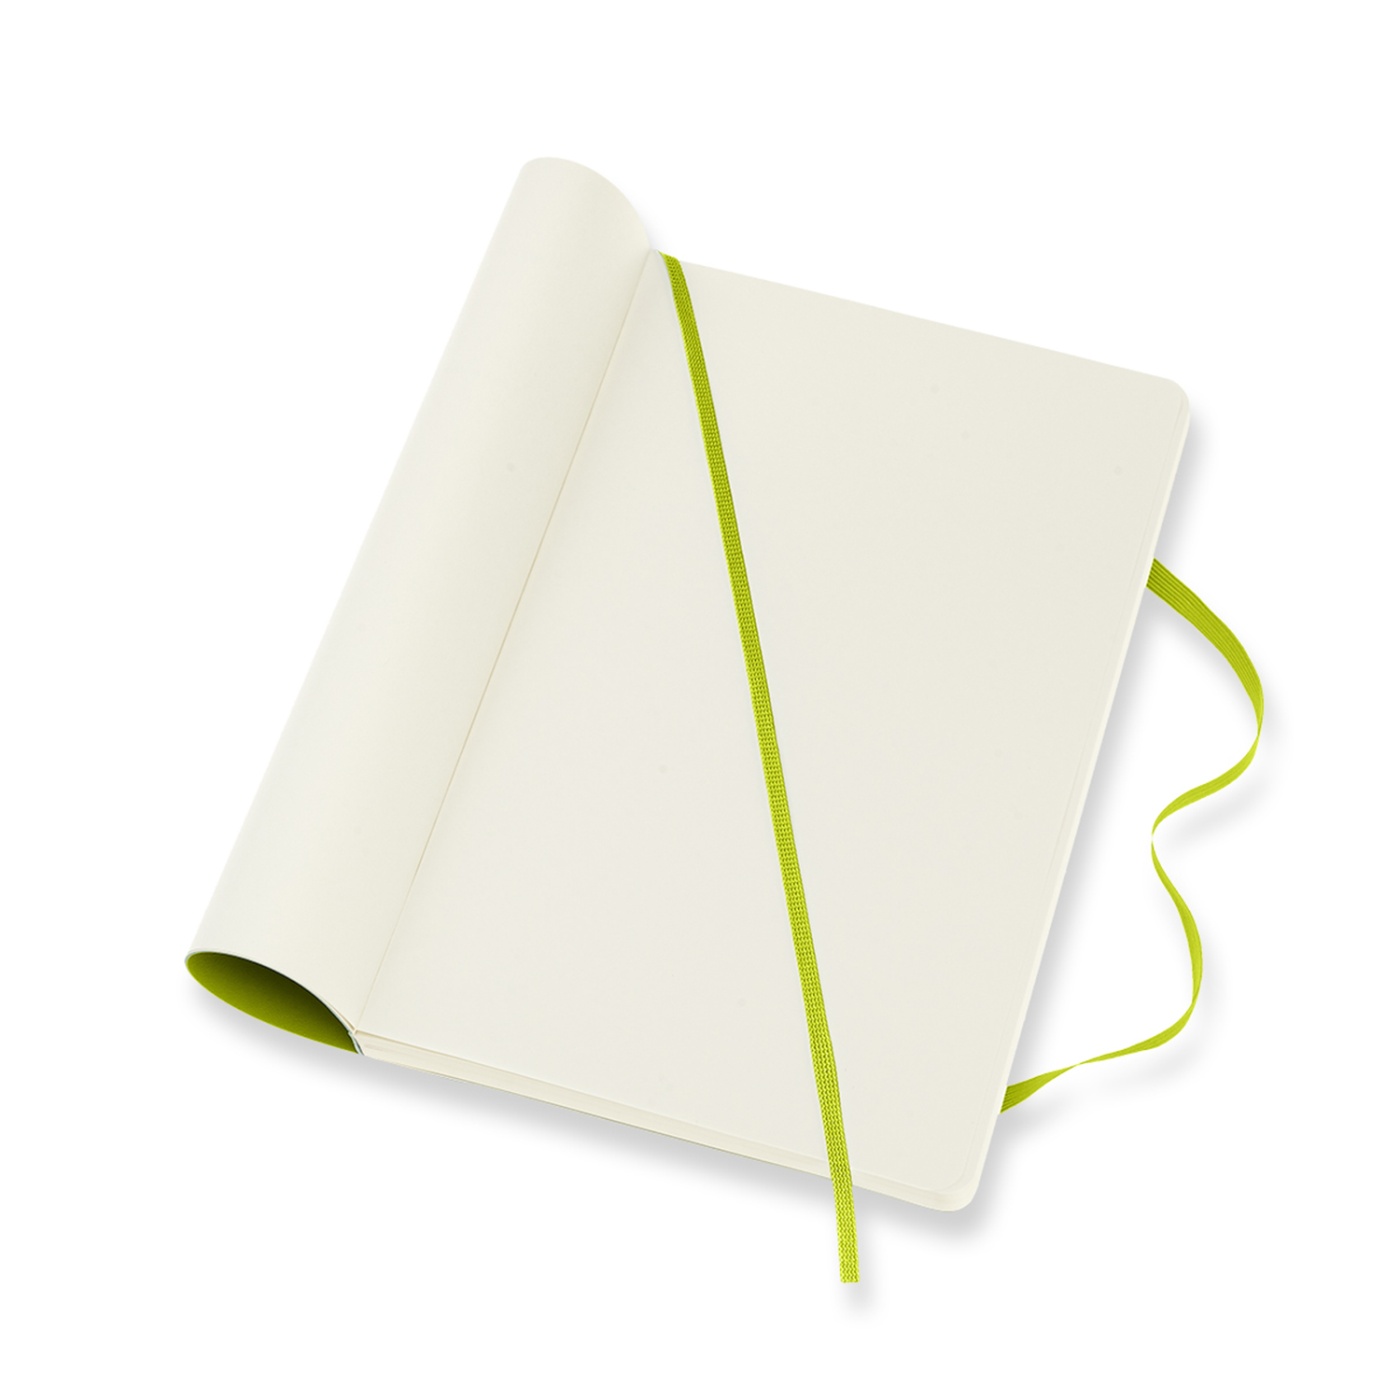 Classic Soft Cover Large Lemon Green in der Gruppe Papier & Blöcke / Schreiben und Notizen / Notizbücher bei Pen Store (100420_r)